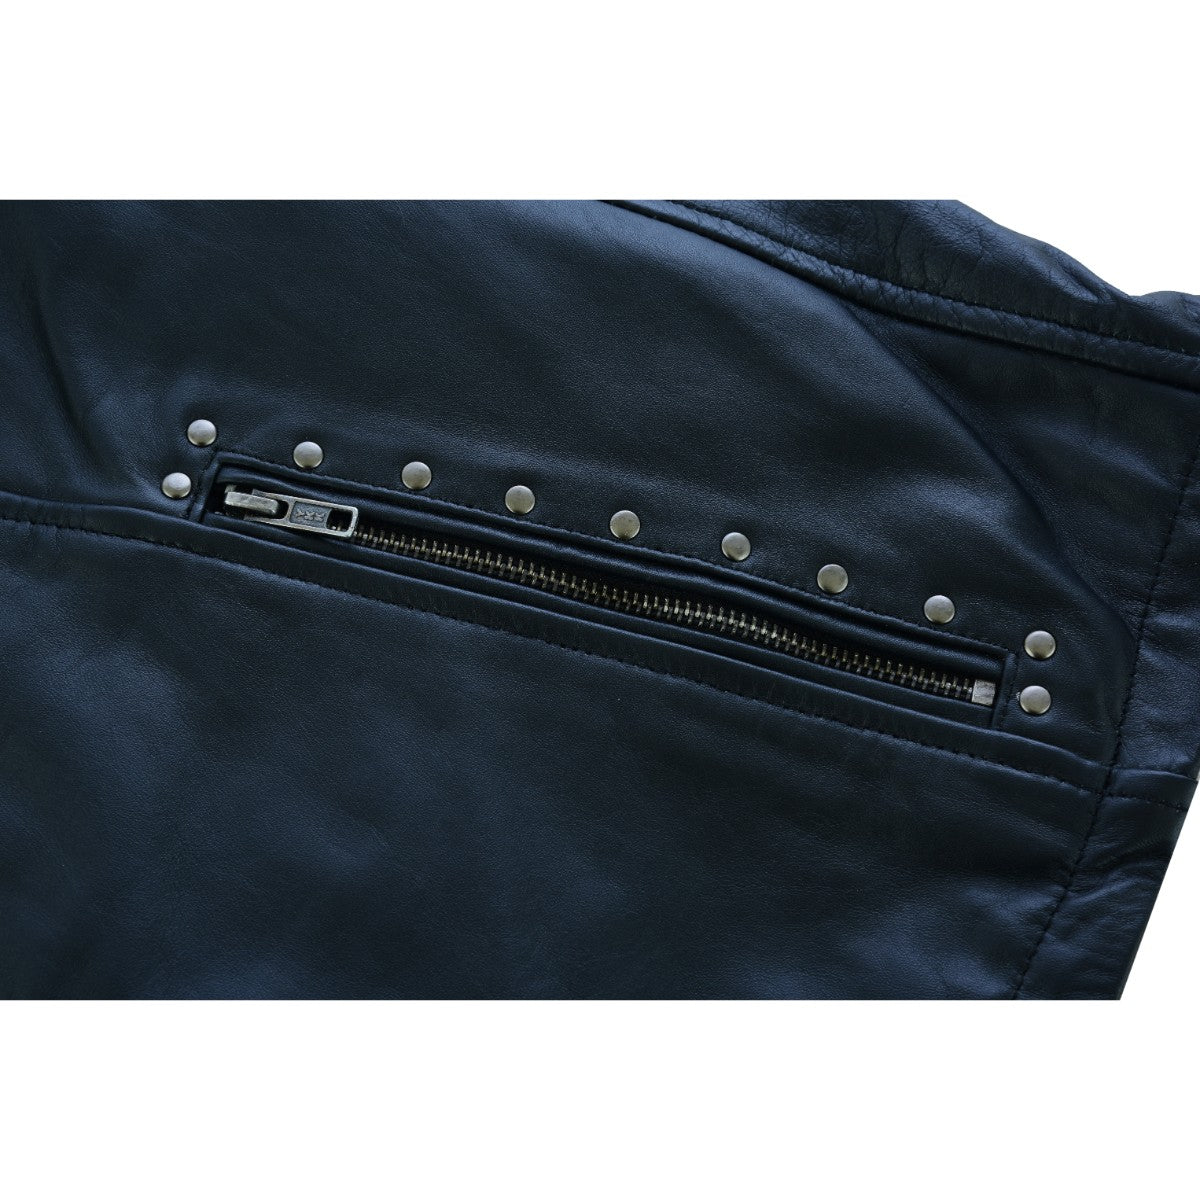 HML704B High Mileage Ladies Black Fringe and Black Studs Leather Jacket